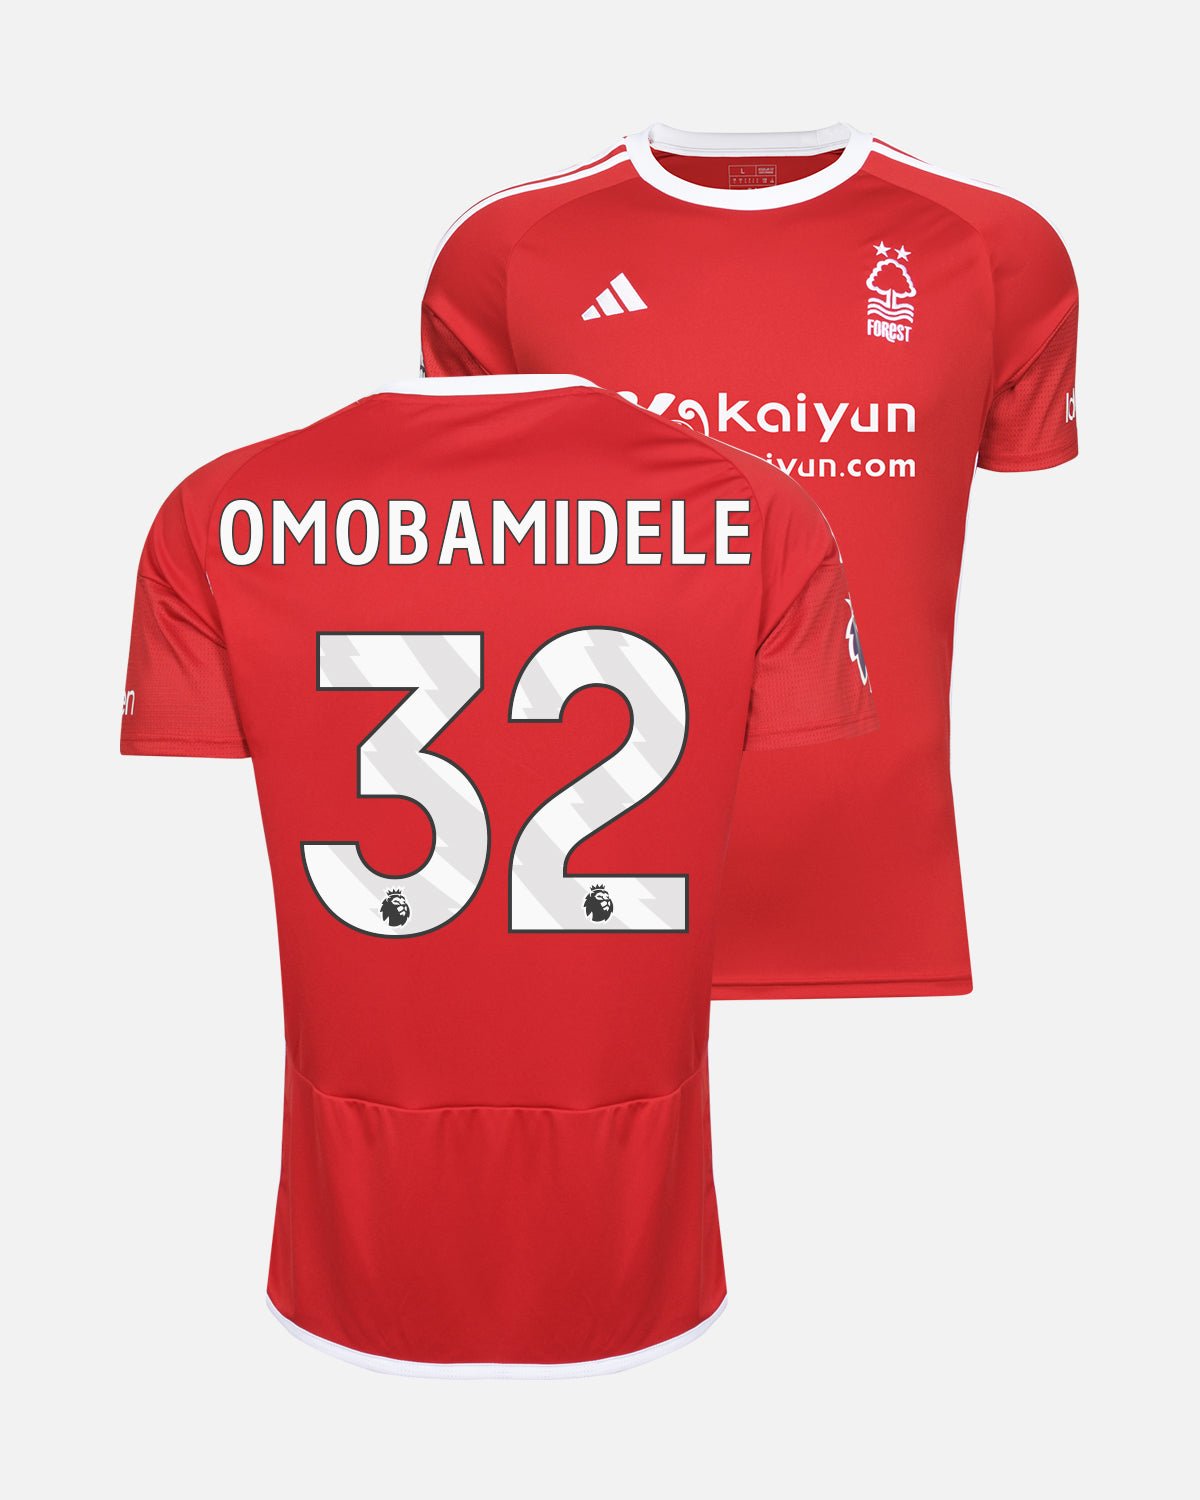 NFFC Home Shirt 23-24 - Omobamidele 32 - Nottingham Forest FC